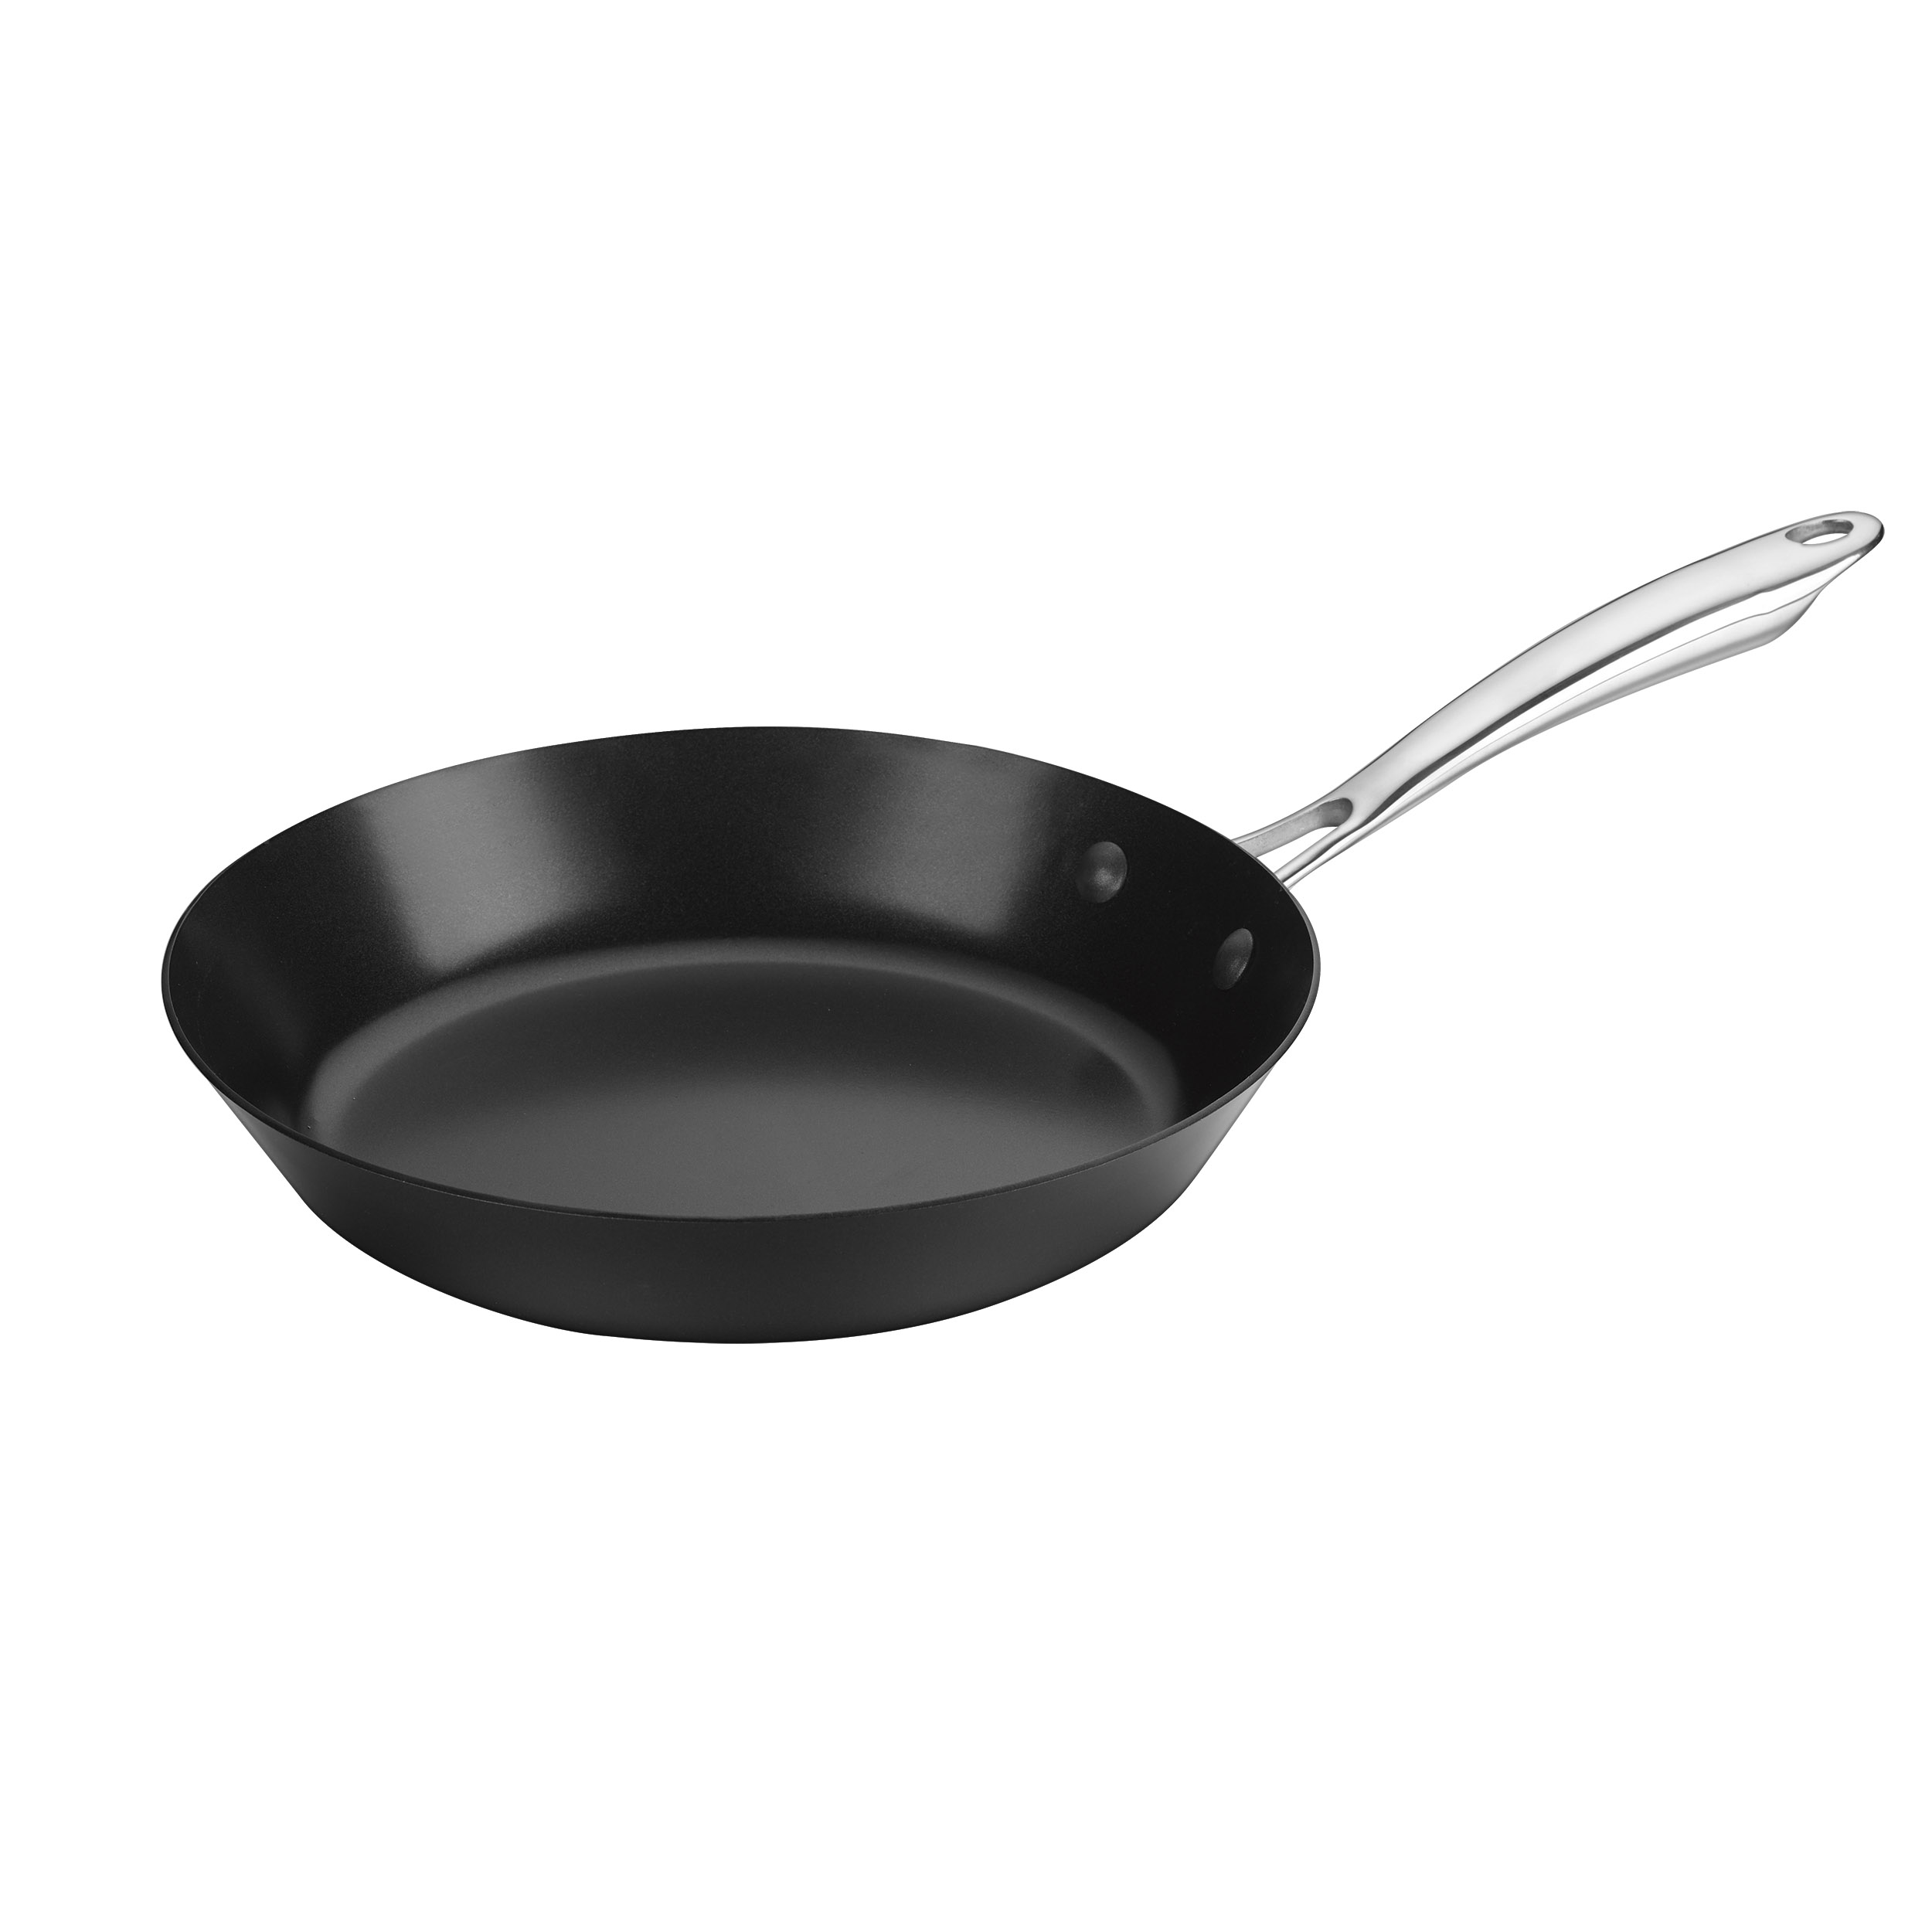 Carbonware 10" Carbon Steel Fry Pan